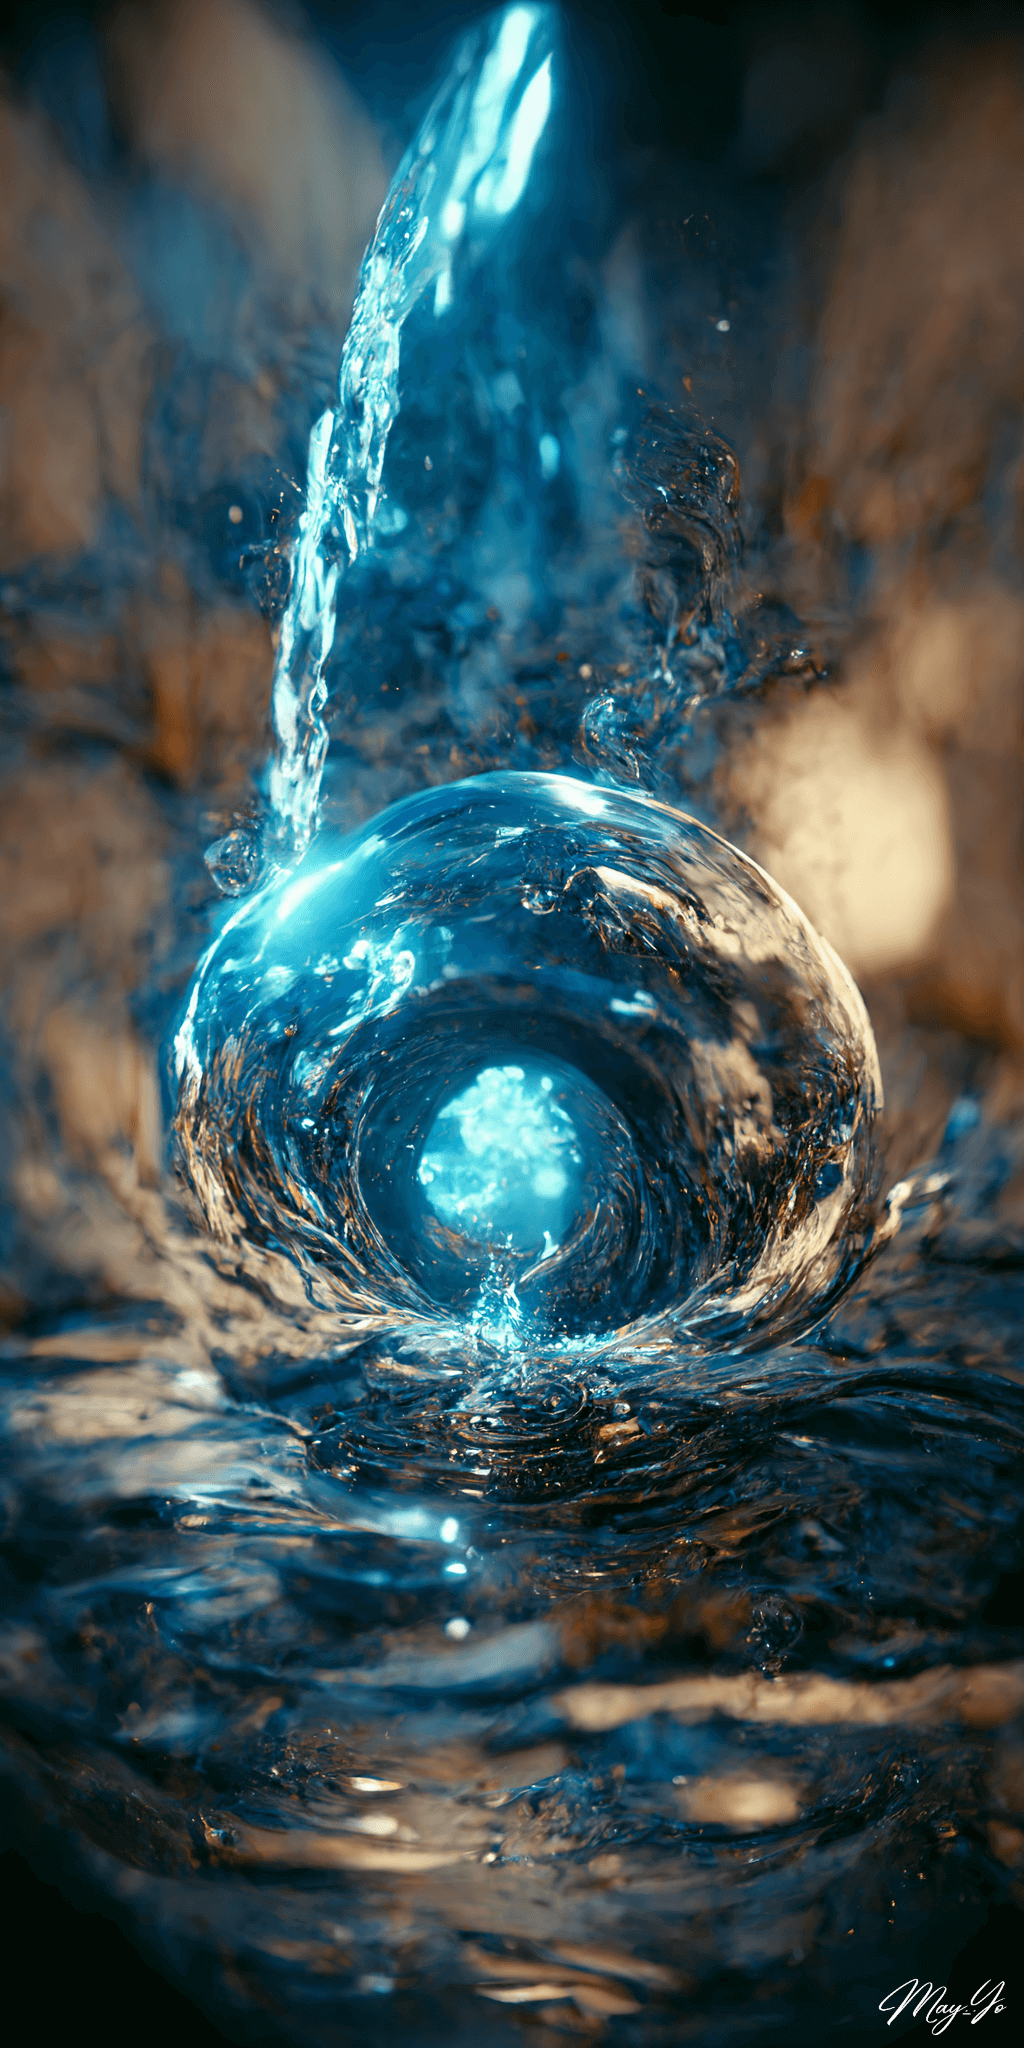 飛び散る水滴がリアルな水の魔法の壁紙イラスト 水流・渦をイメージした待受 AIイラスト待受 縦長画像 water magic illustration fantasy splash